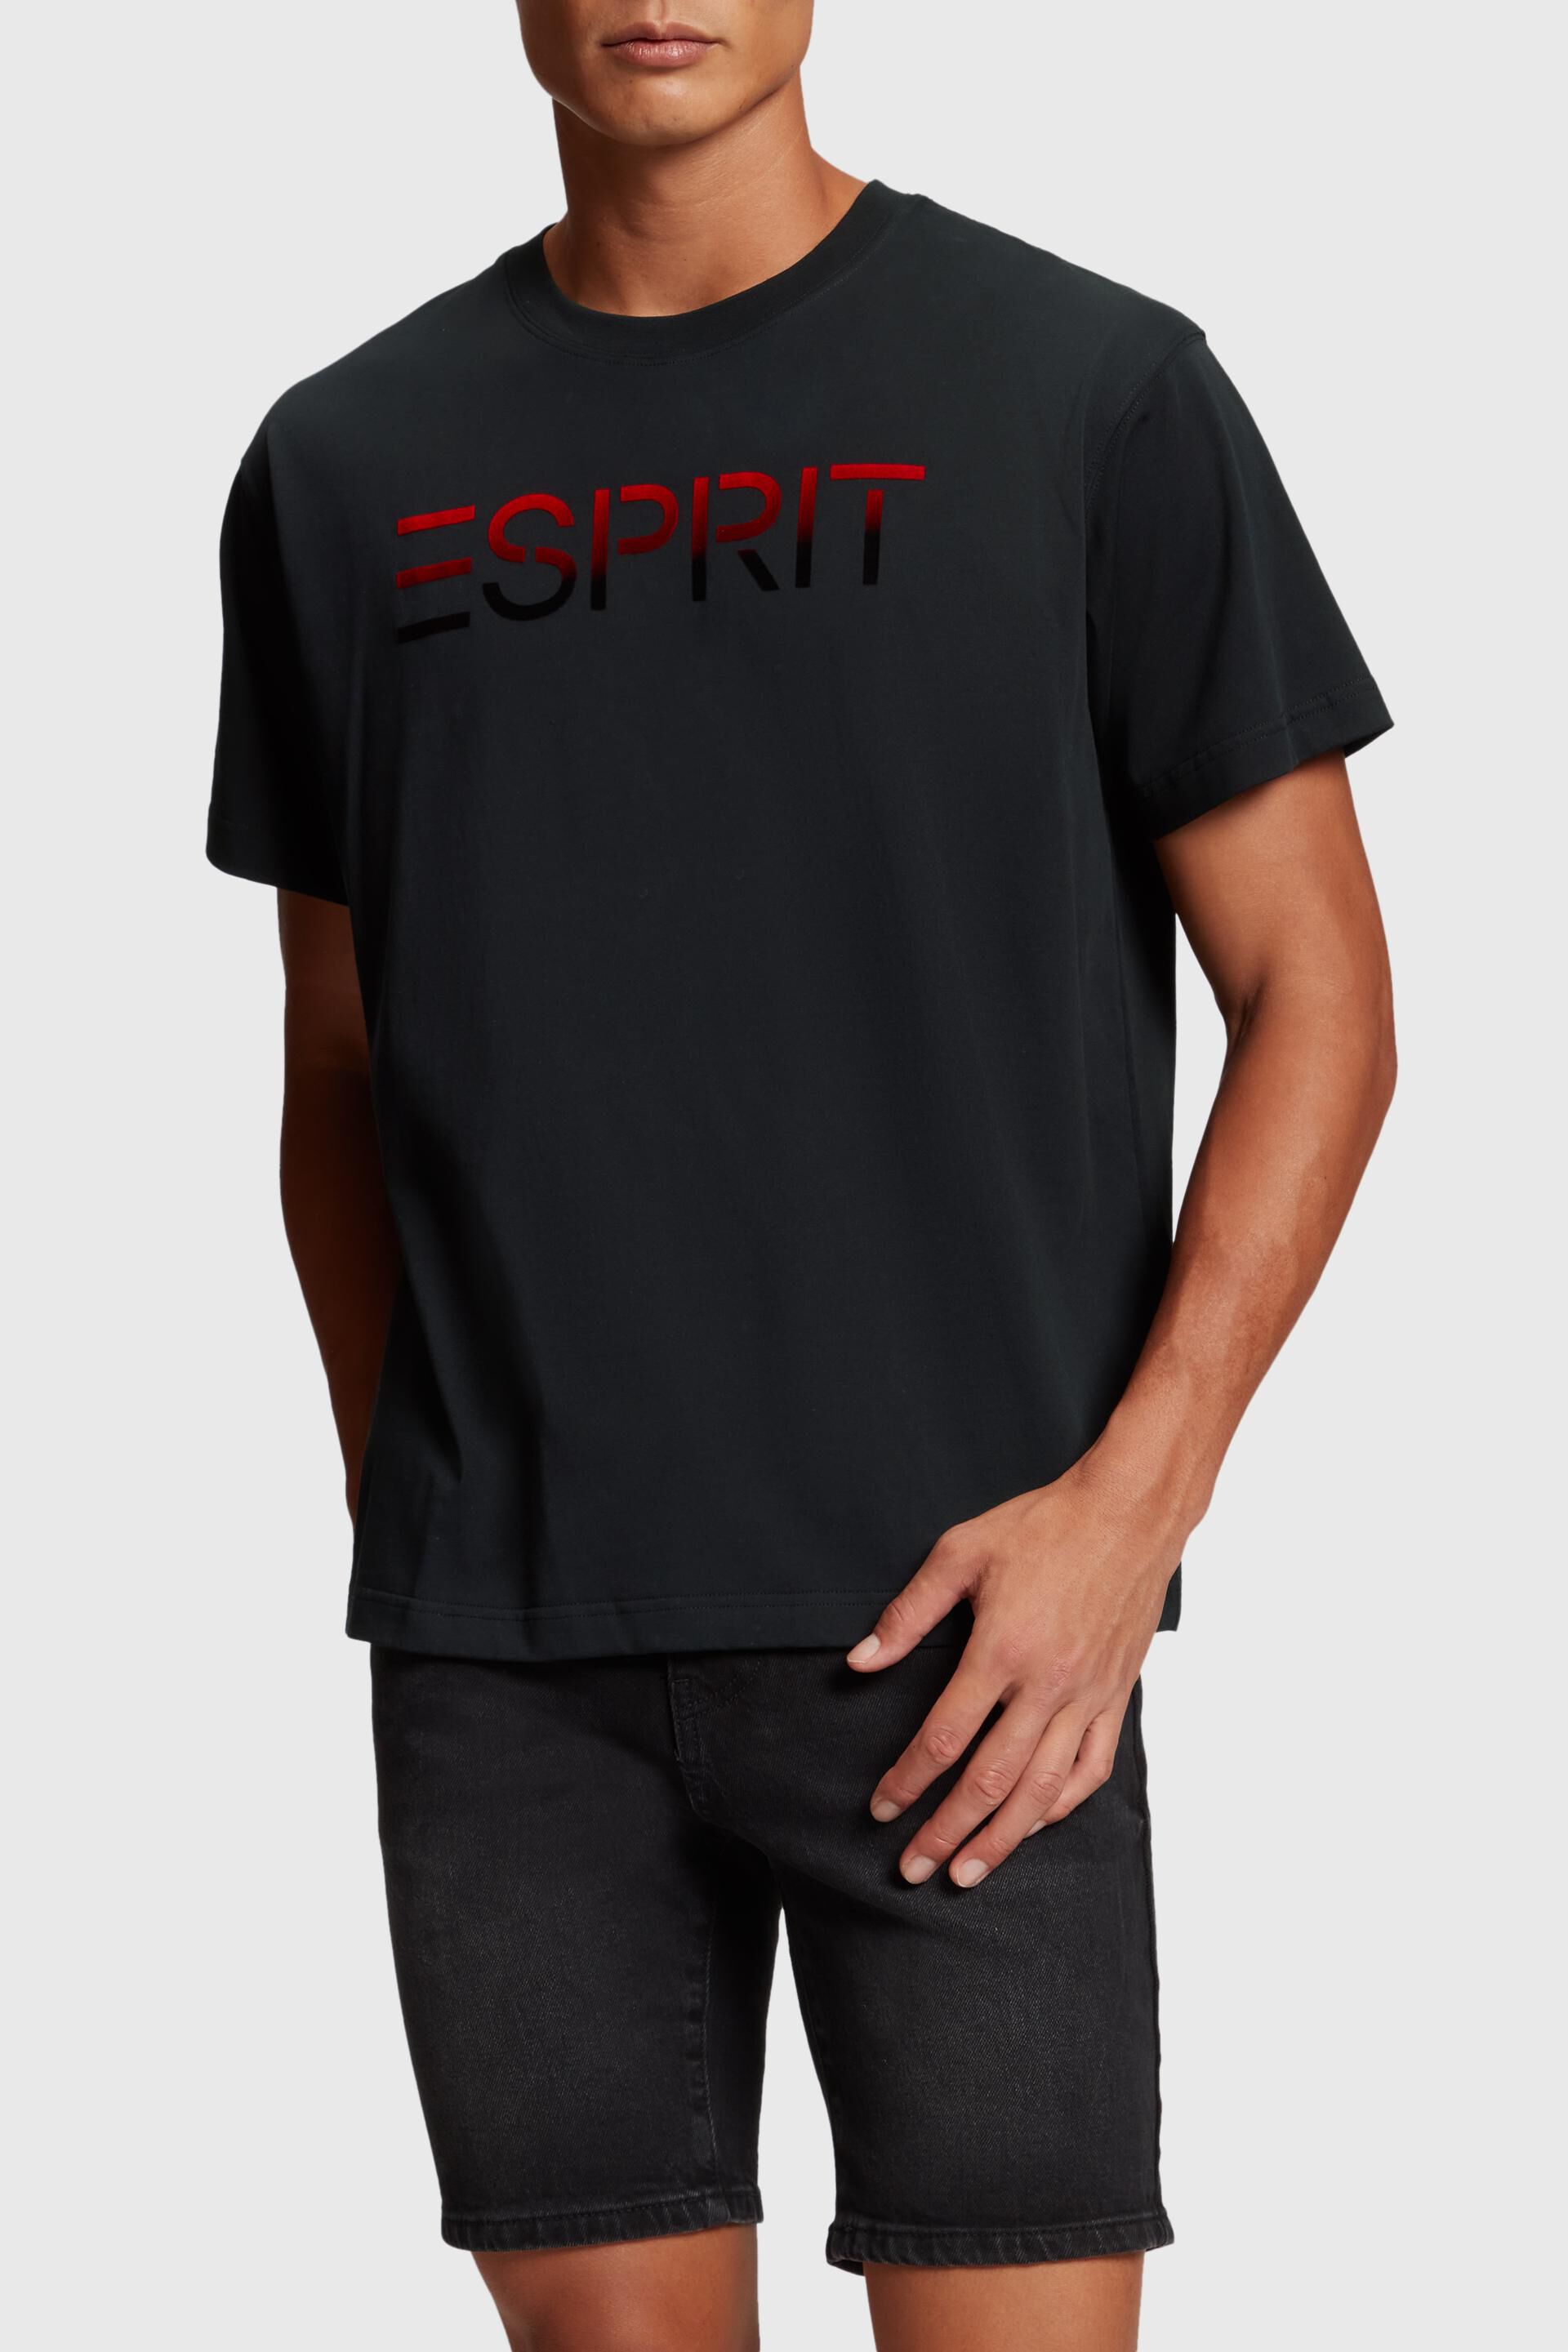 Esprit flocked logo applique Chest t-shirt